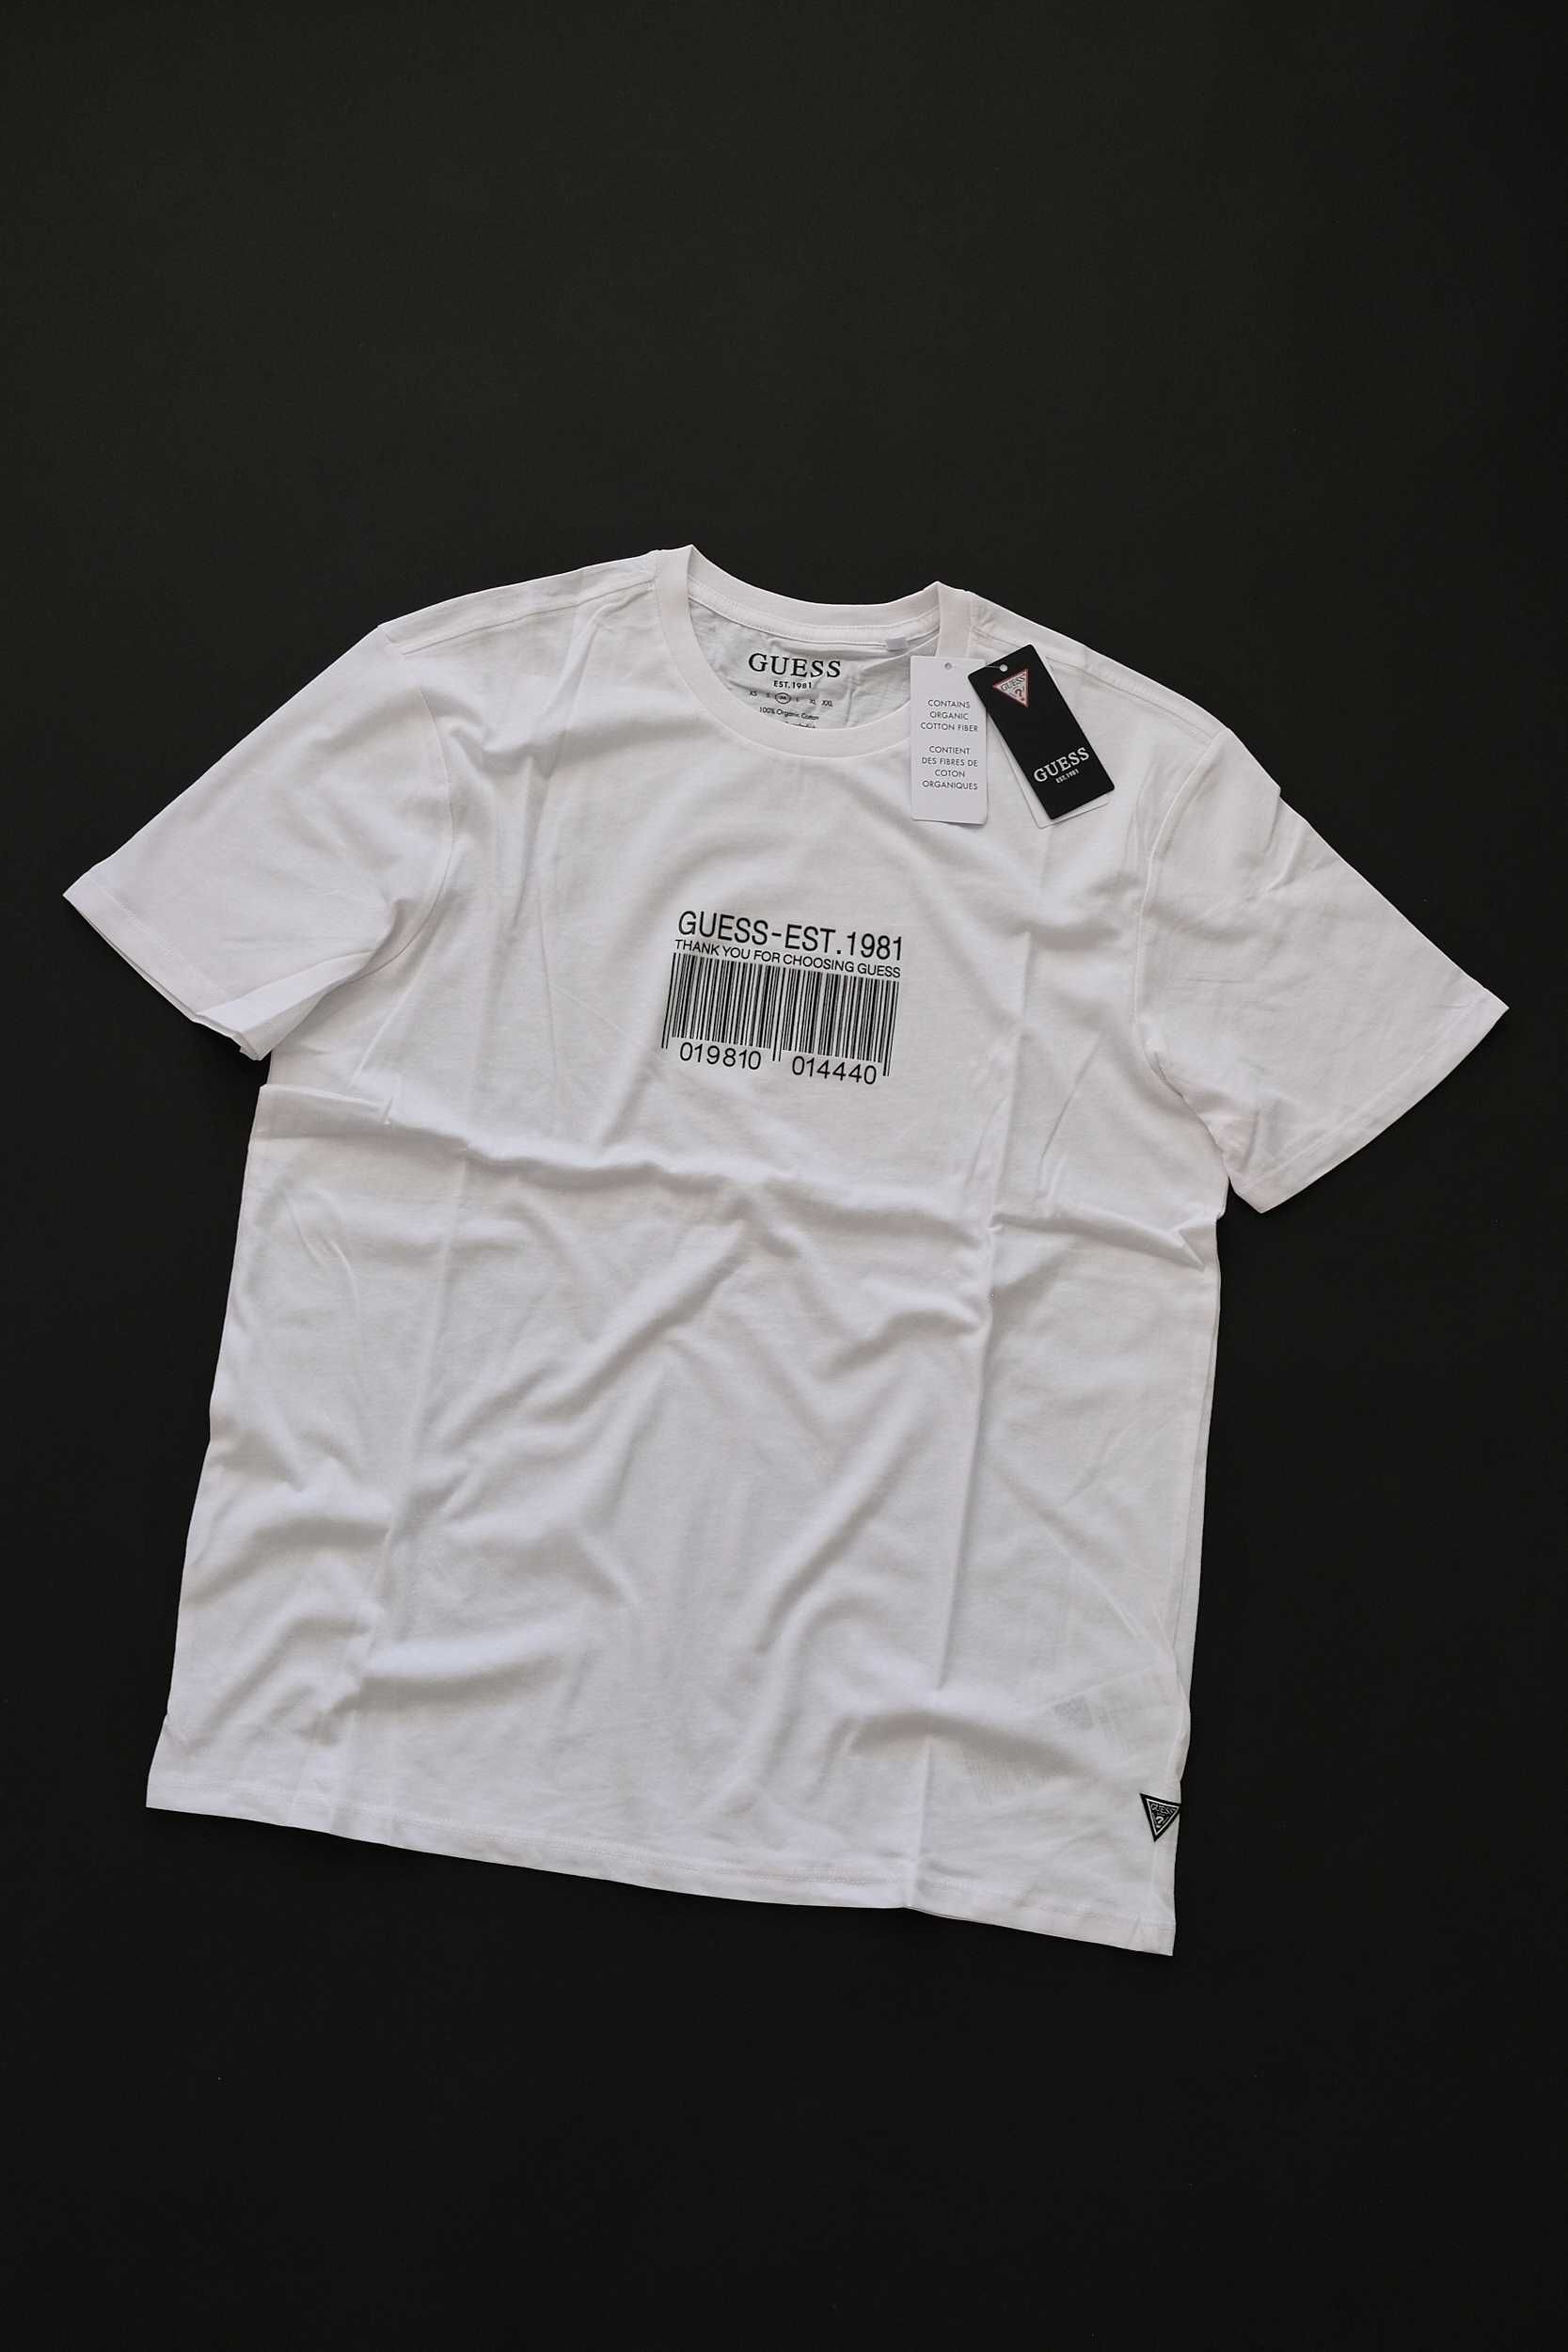 ПРОМО GUESS XL размери-Оригинална бяла мъжка тениска с баркод